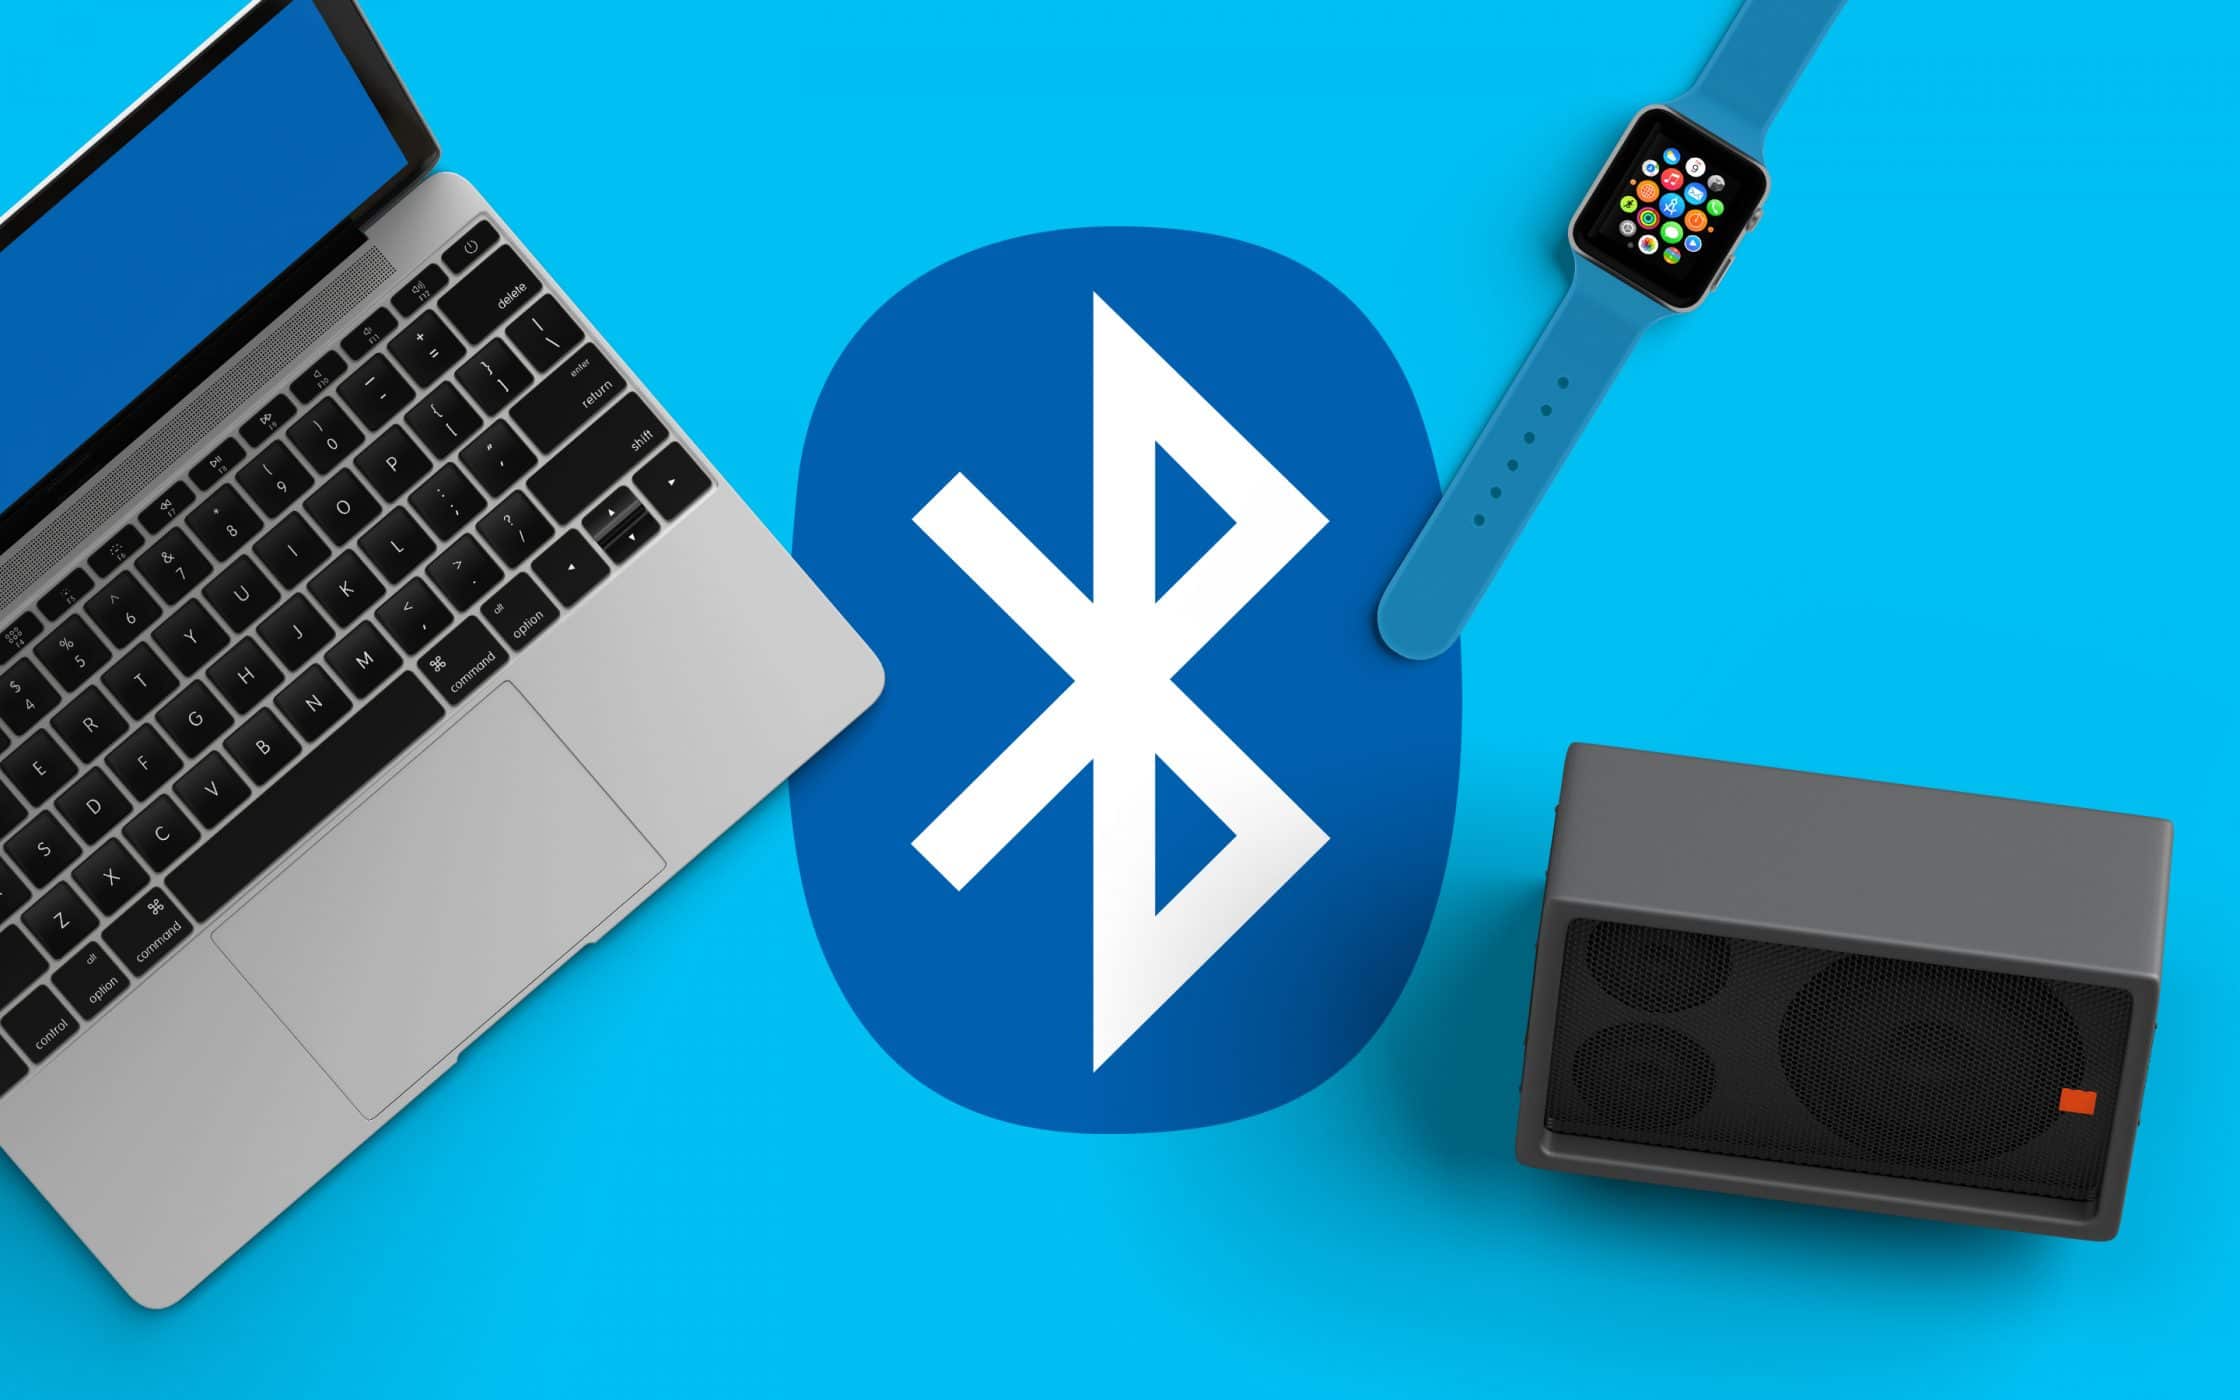 Microsoft Windows 10 obtindrà noves funcions per a Bluetooth 5.2 que augmenten el rendiment, la qualitat, l'abast i la seguretat